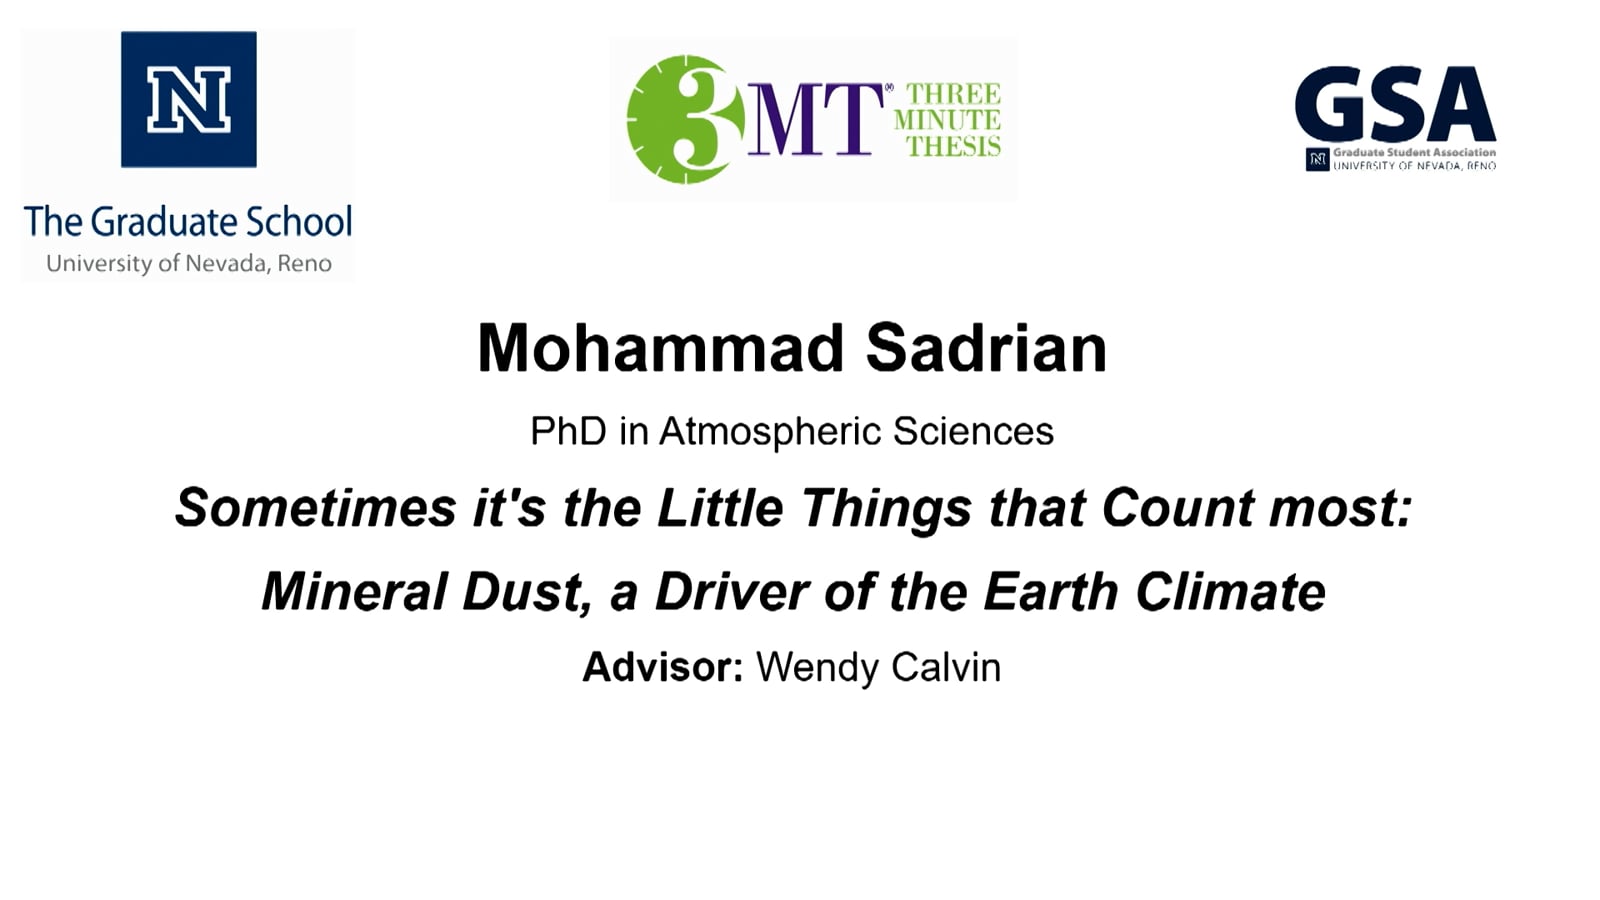 Thumbnail of Mohammad Sadrian's slide